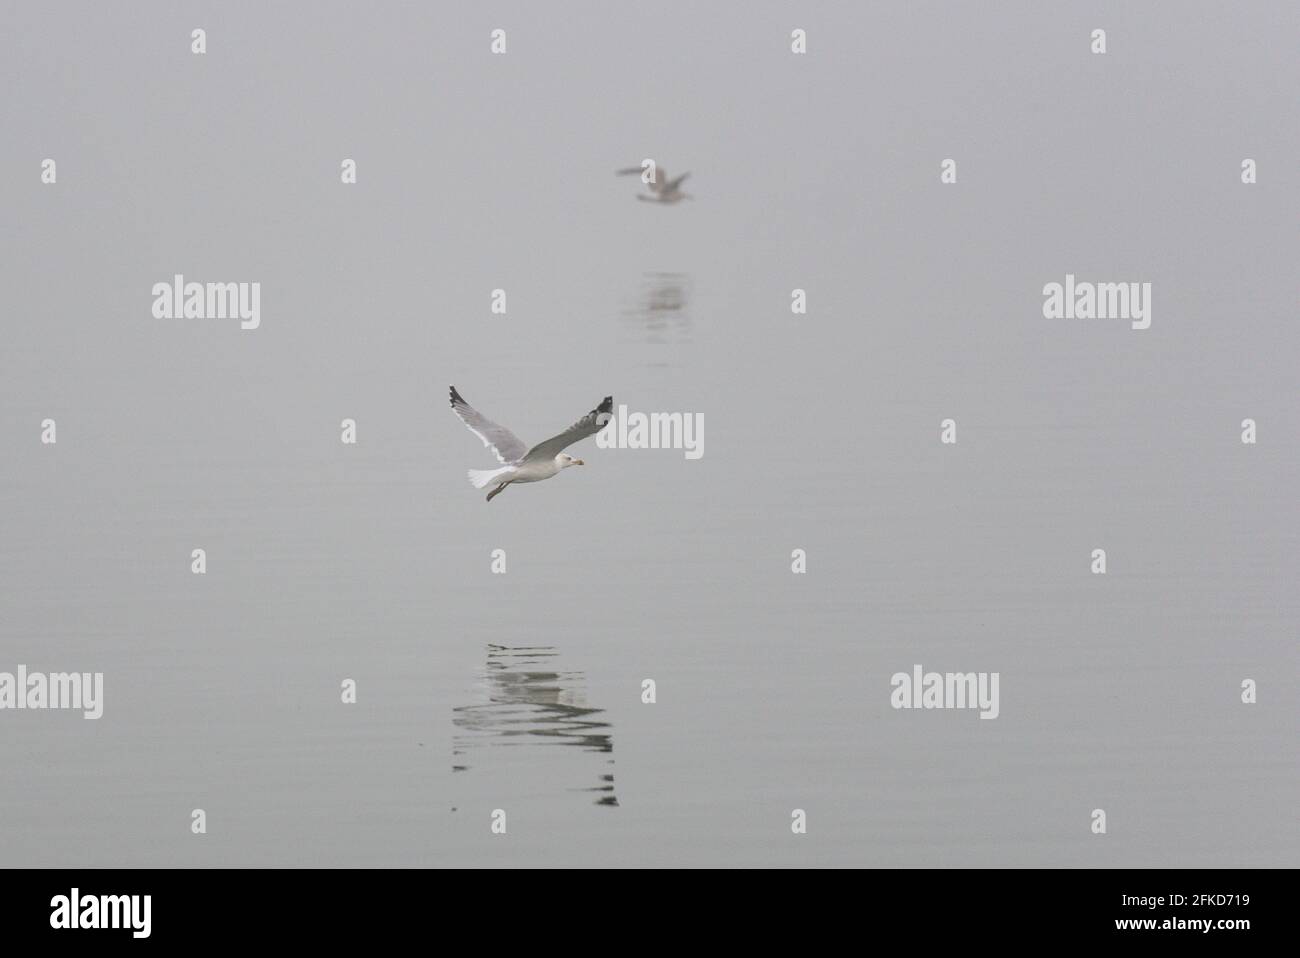 Nebel wenig Sicht Möwe fliegend Flügel schlagend weg Fort grau längs Seite seitlich Verfolgung knapp über Wasser Foto Stock